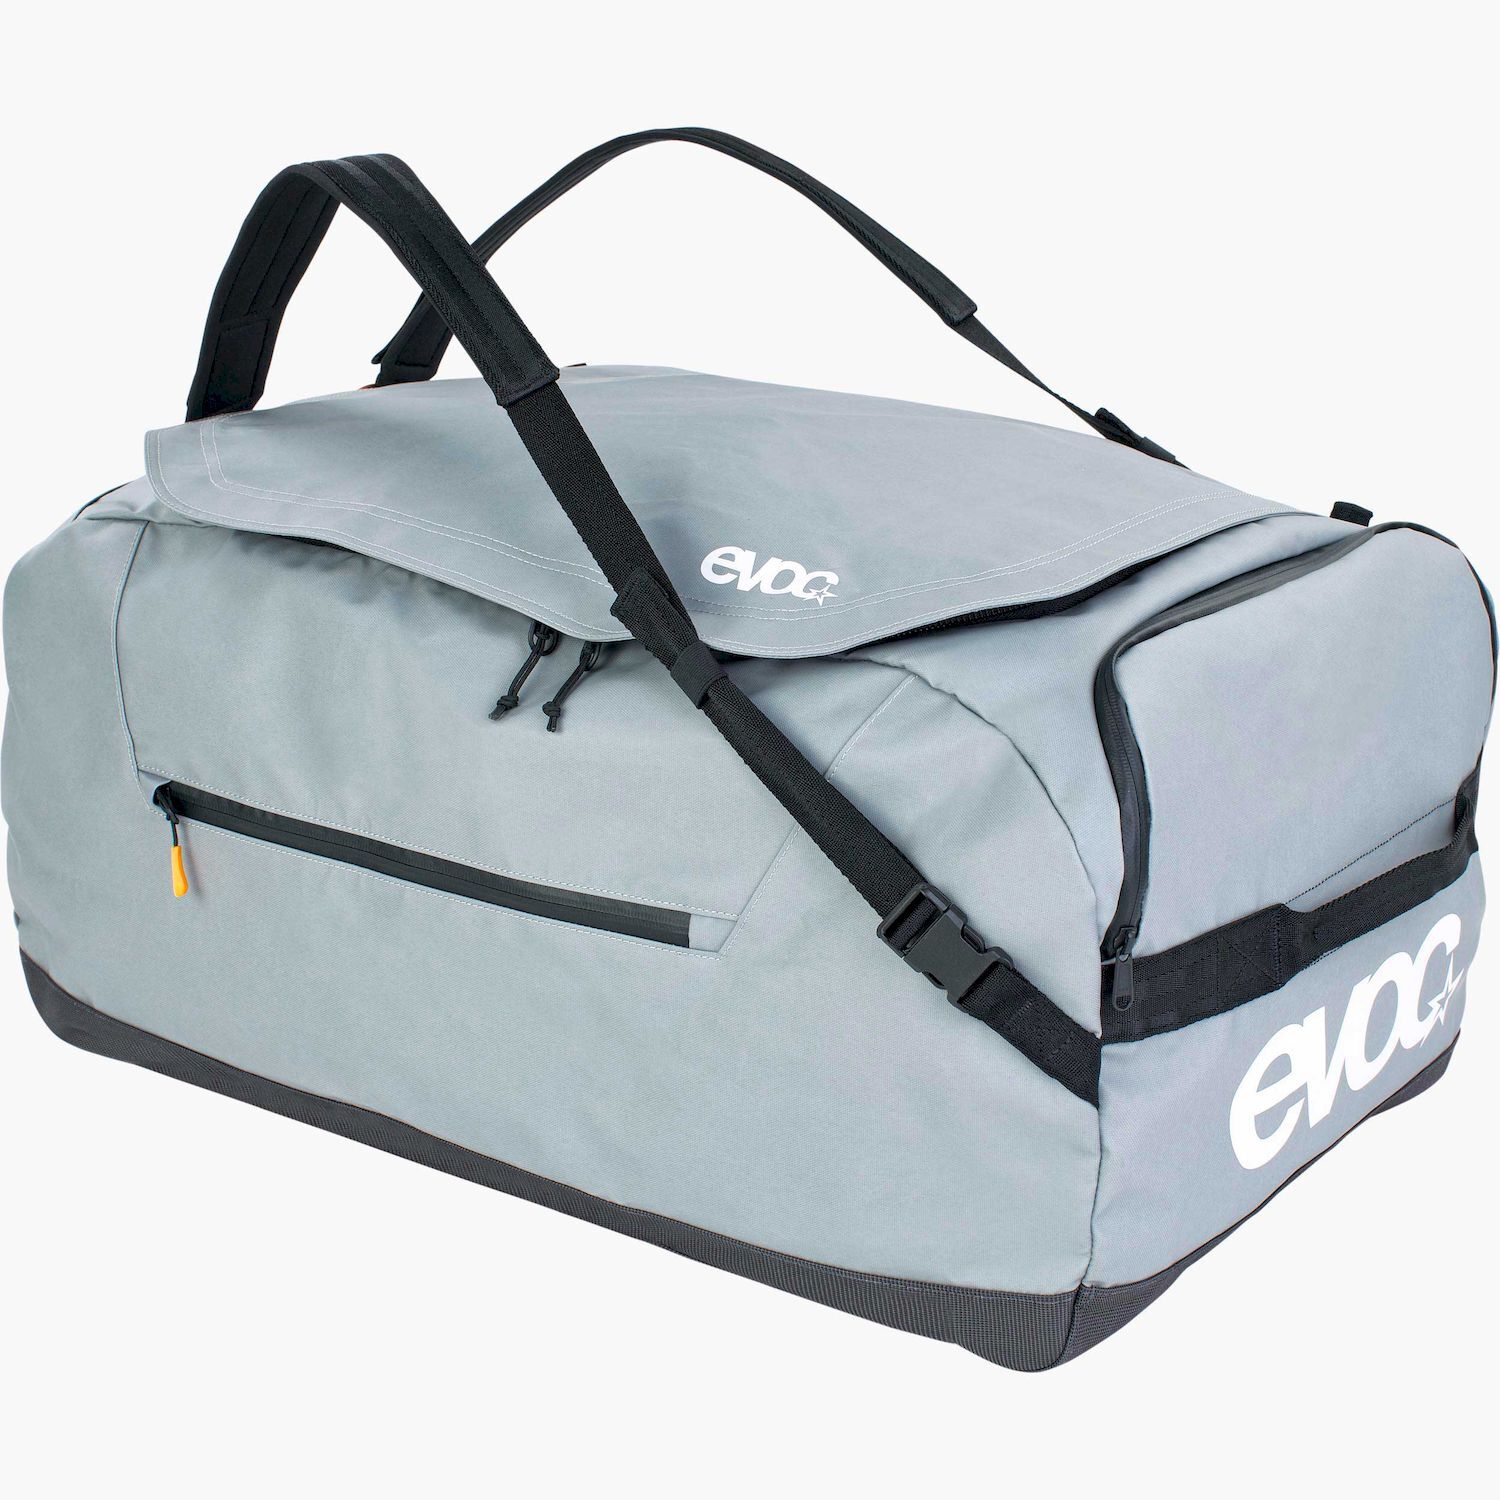 Evoc Duffle Bag 100 - Travel bag